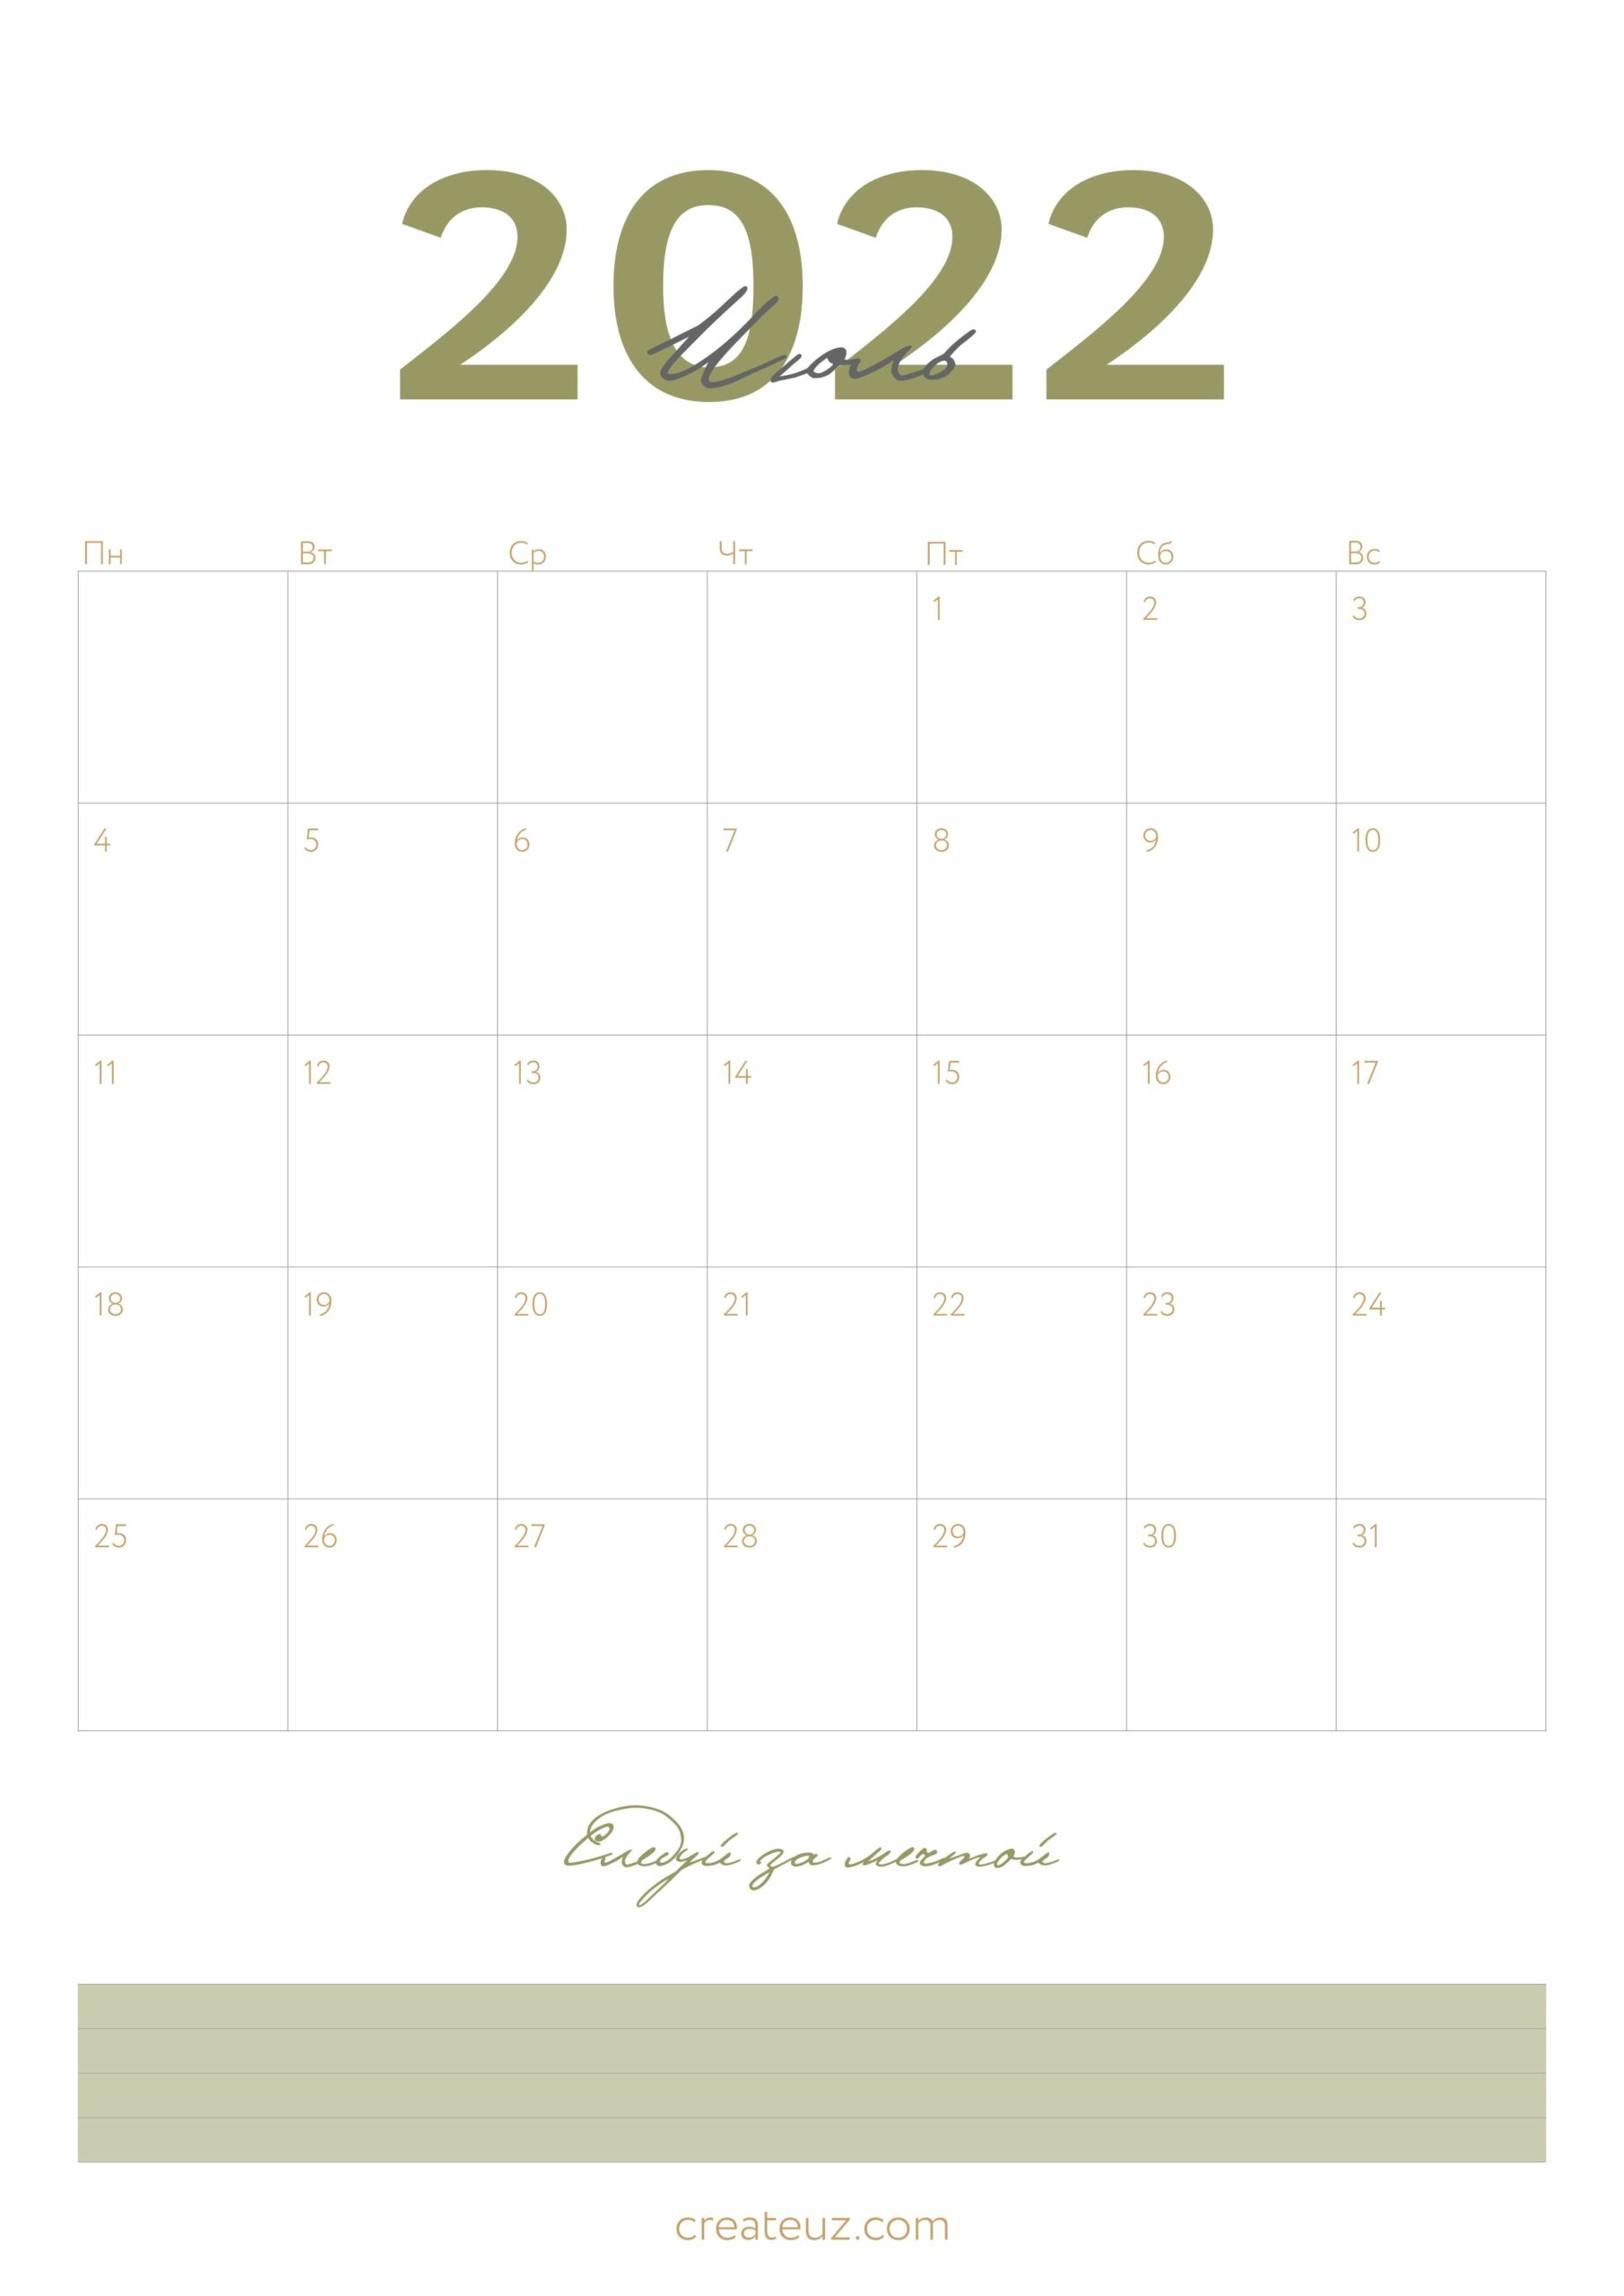 Календари • Create